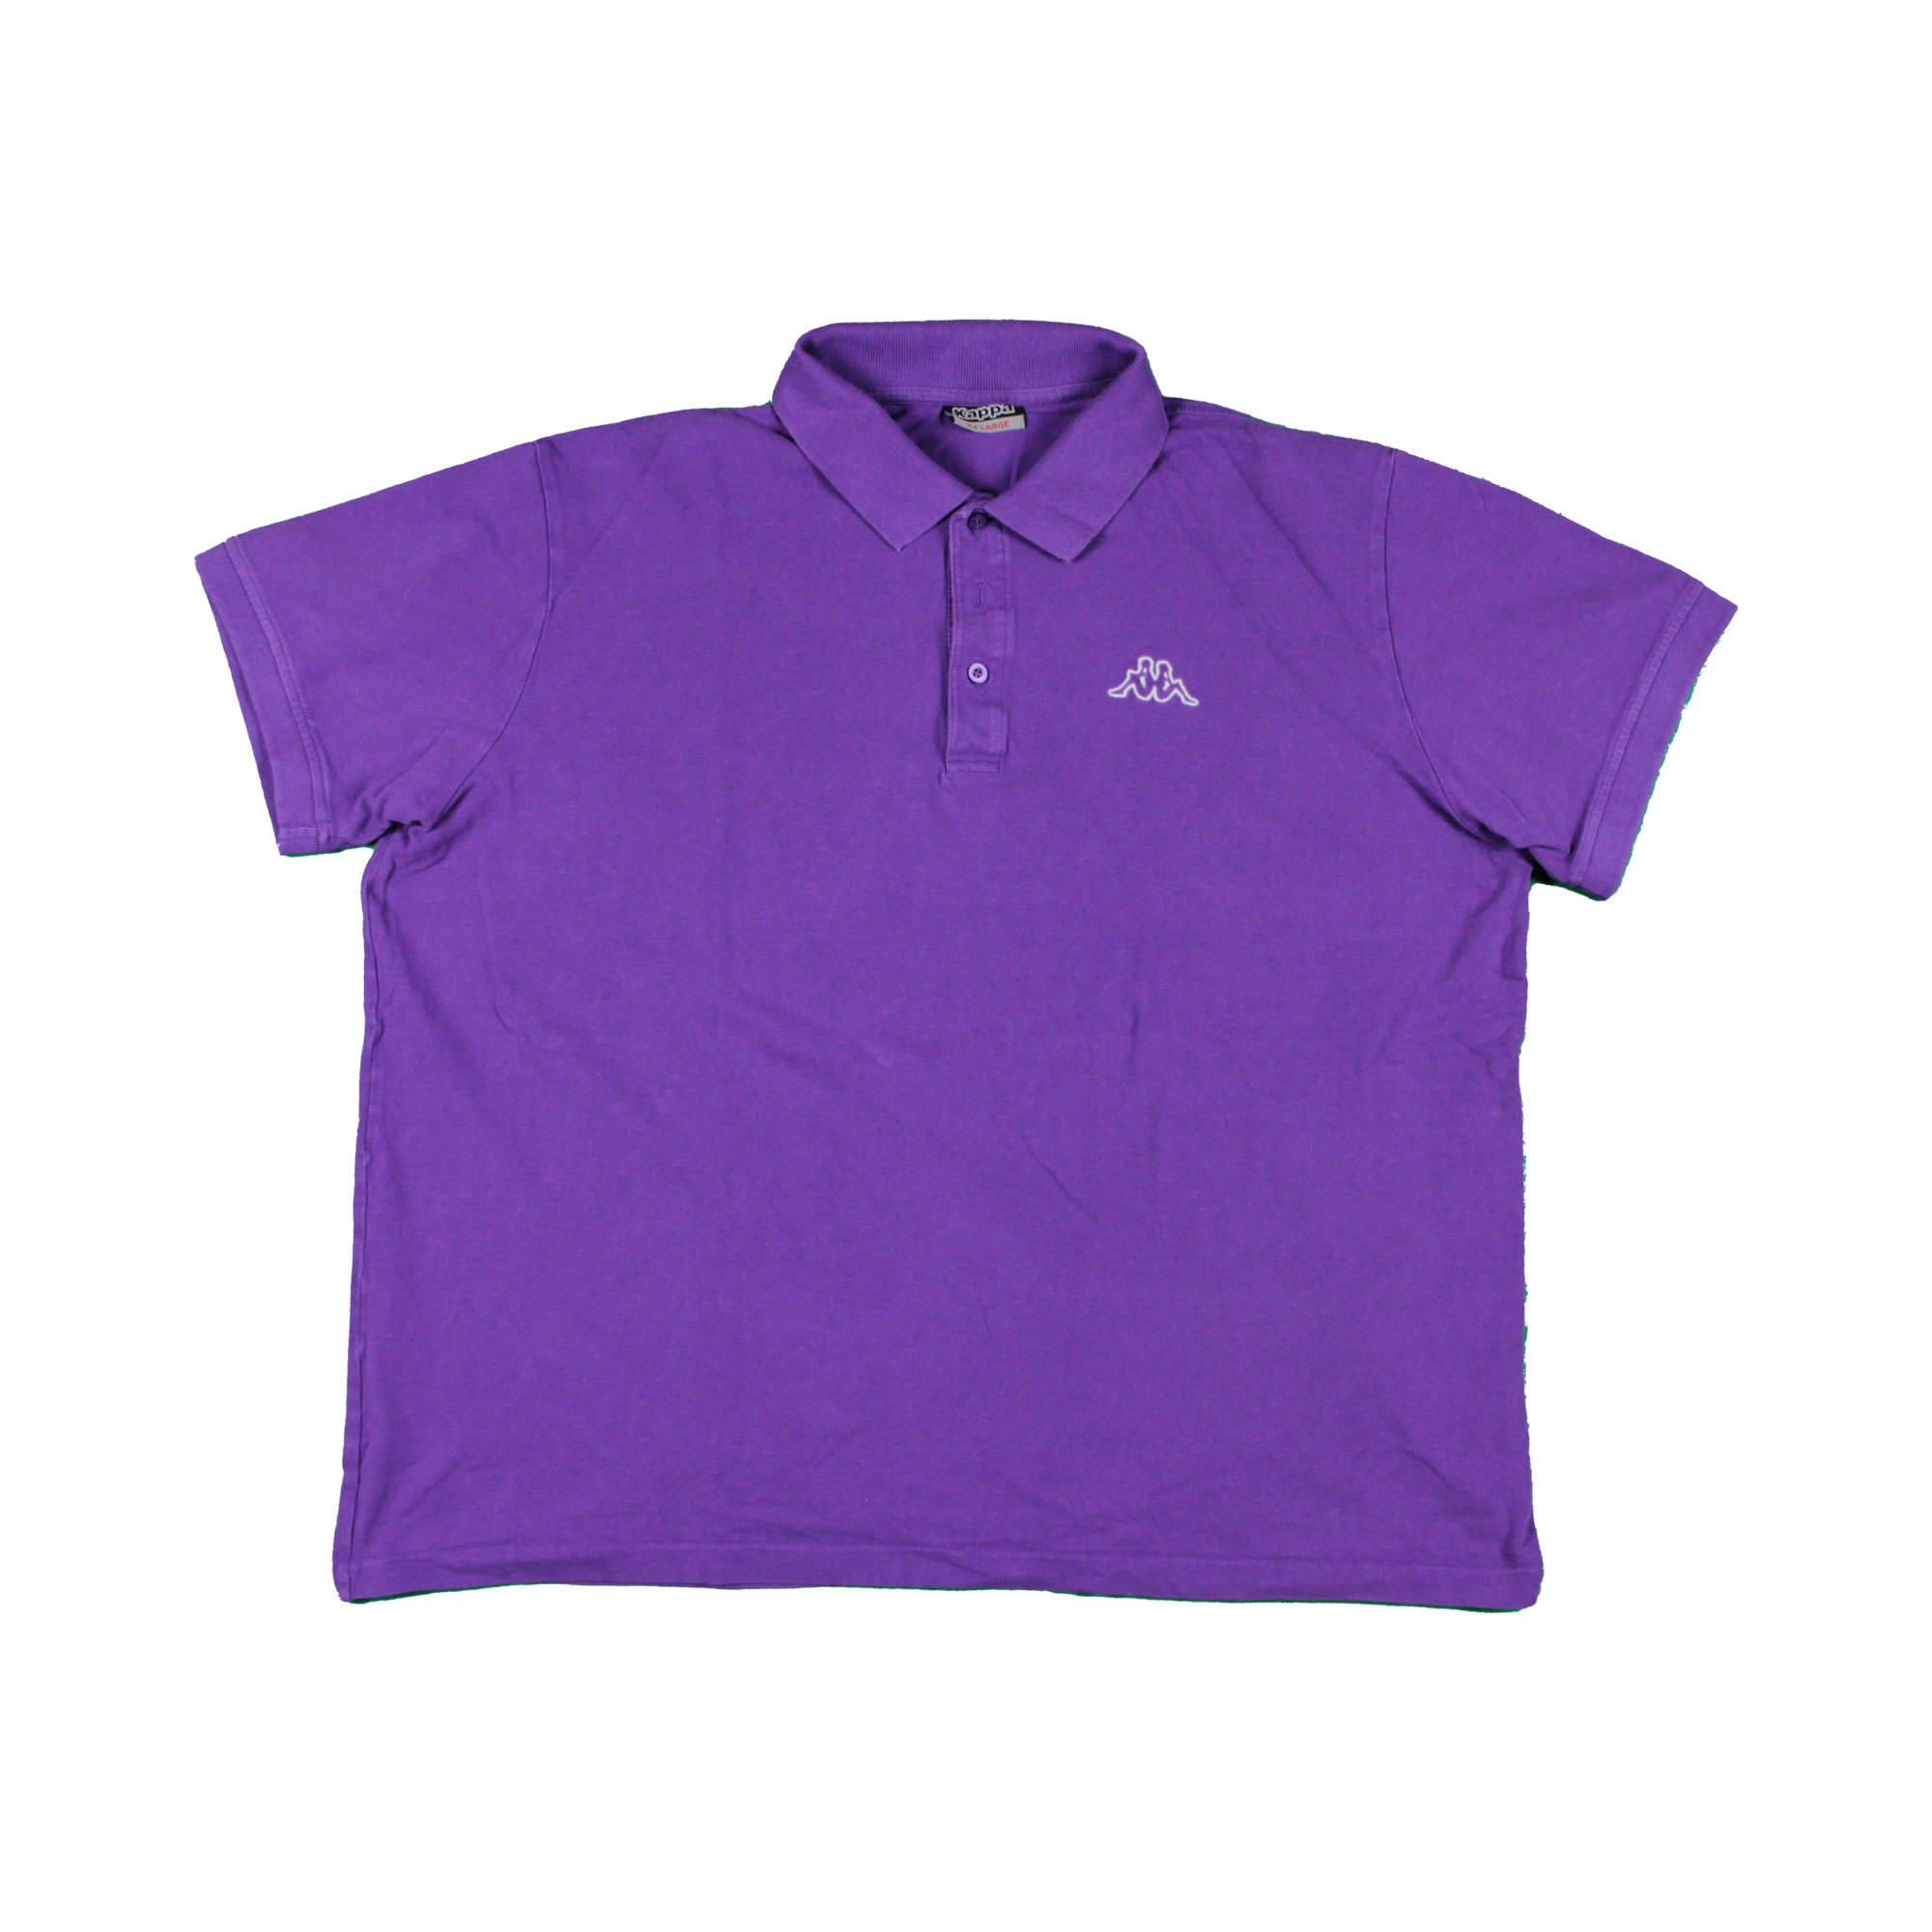 Kappa Vintage Purple Polo T-Shirt - XL